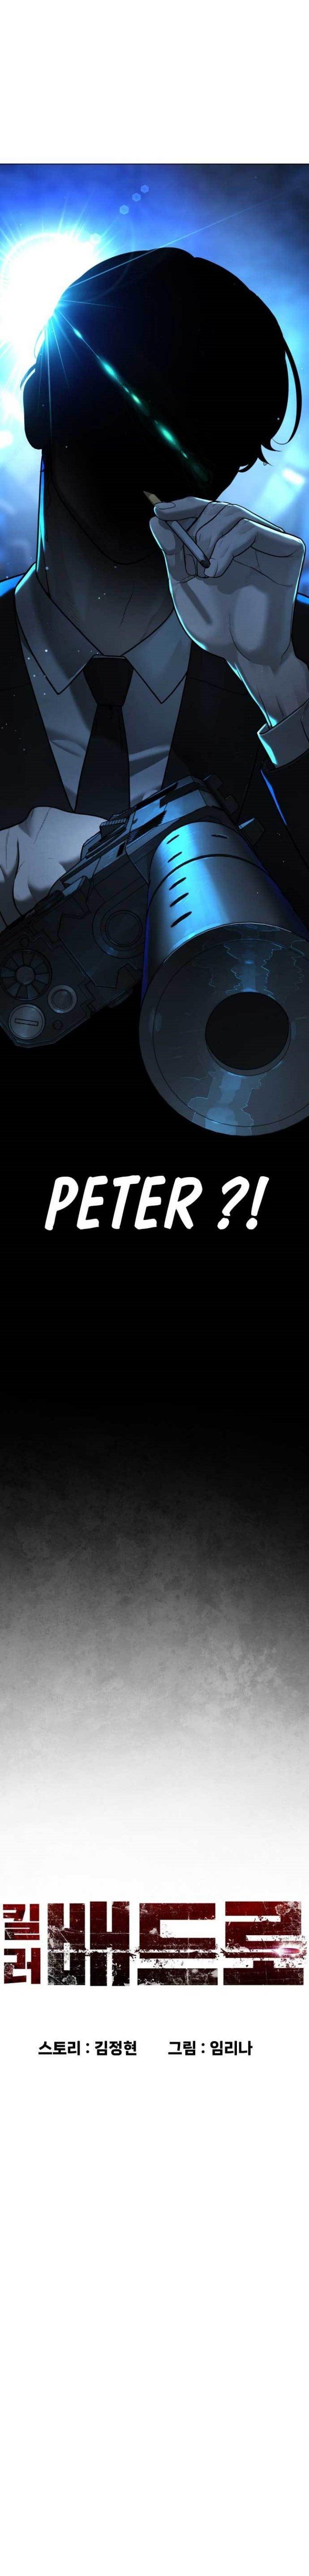 Killer Peter Chapter 1